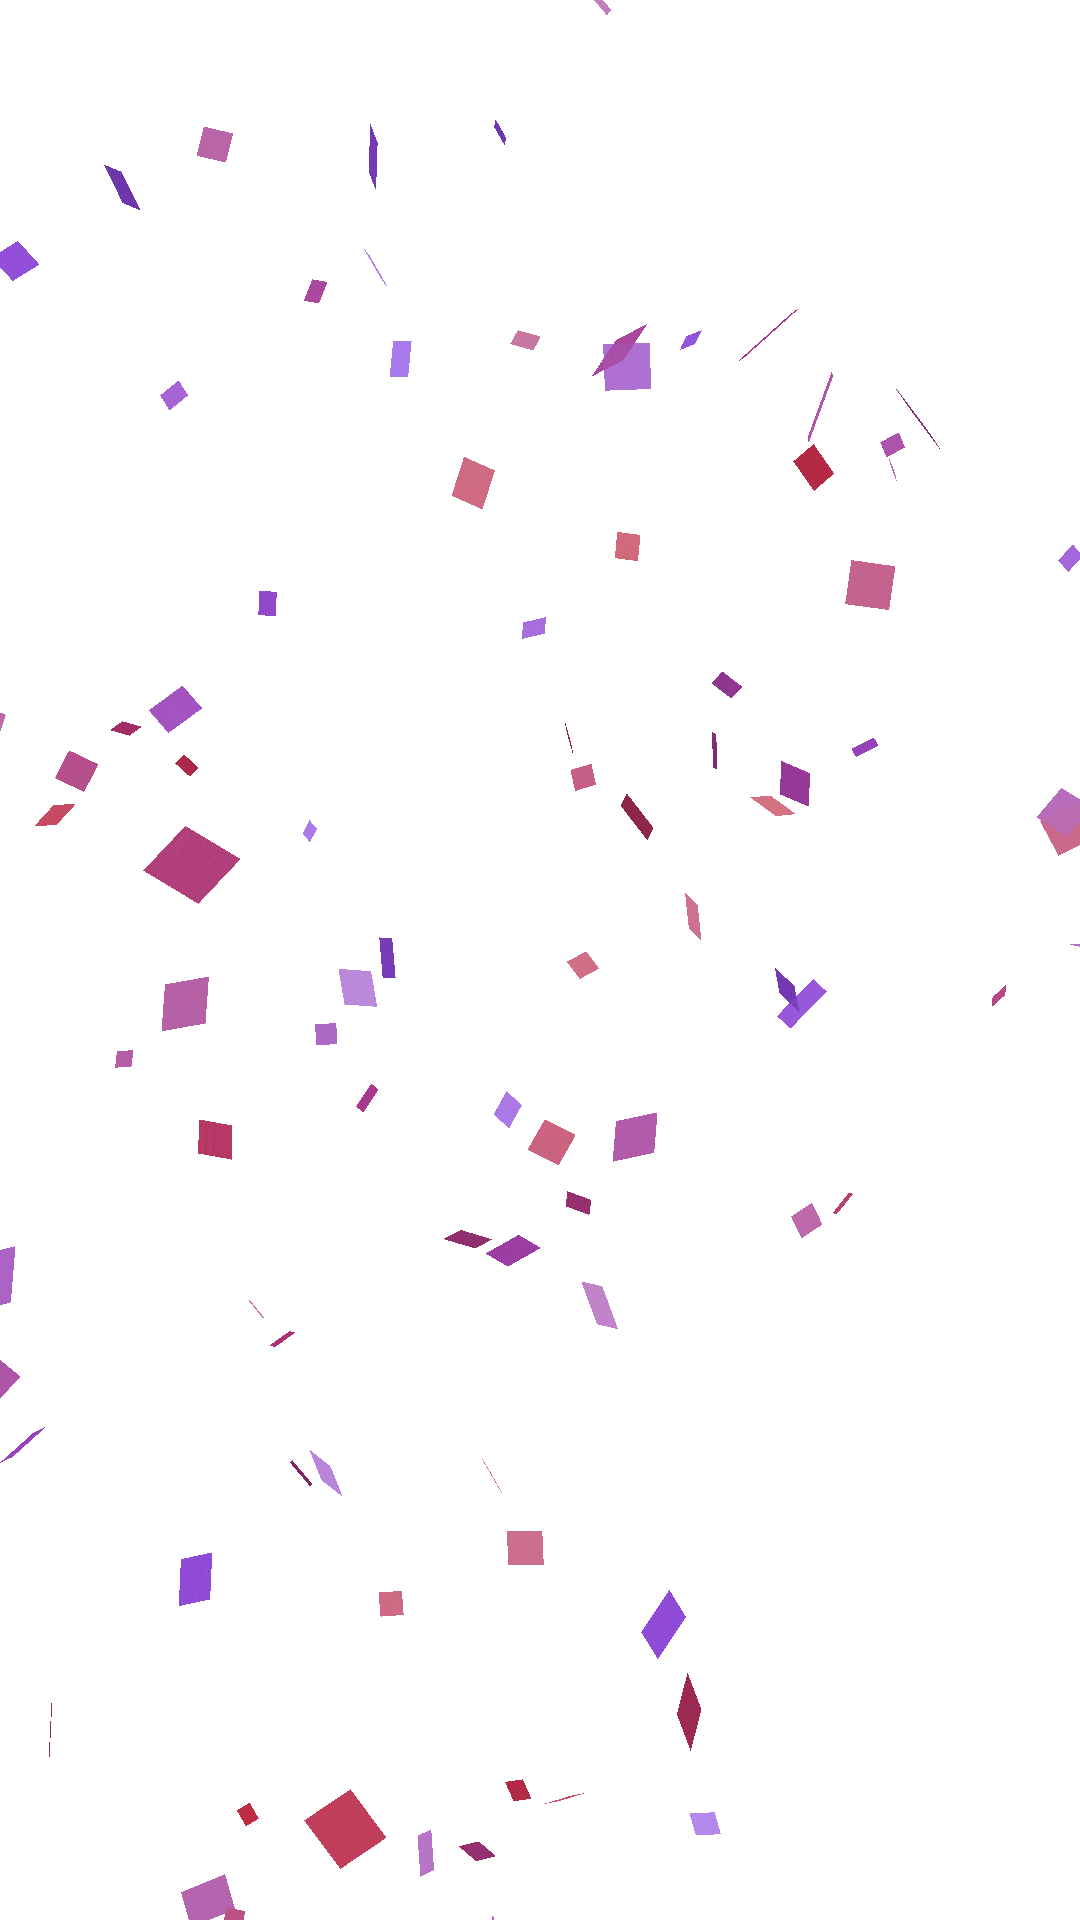 Confettis au format GIF - 55 images animées